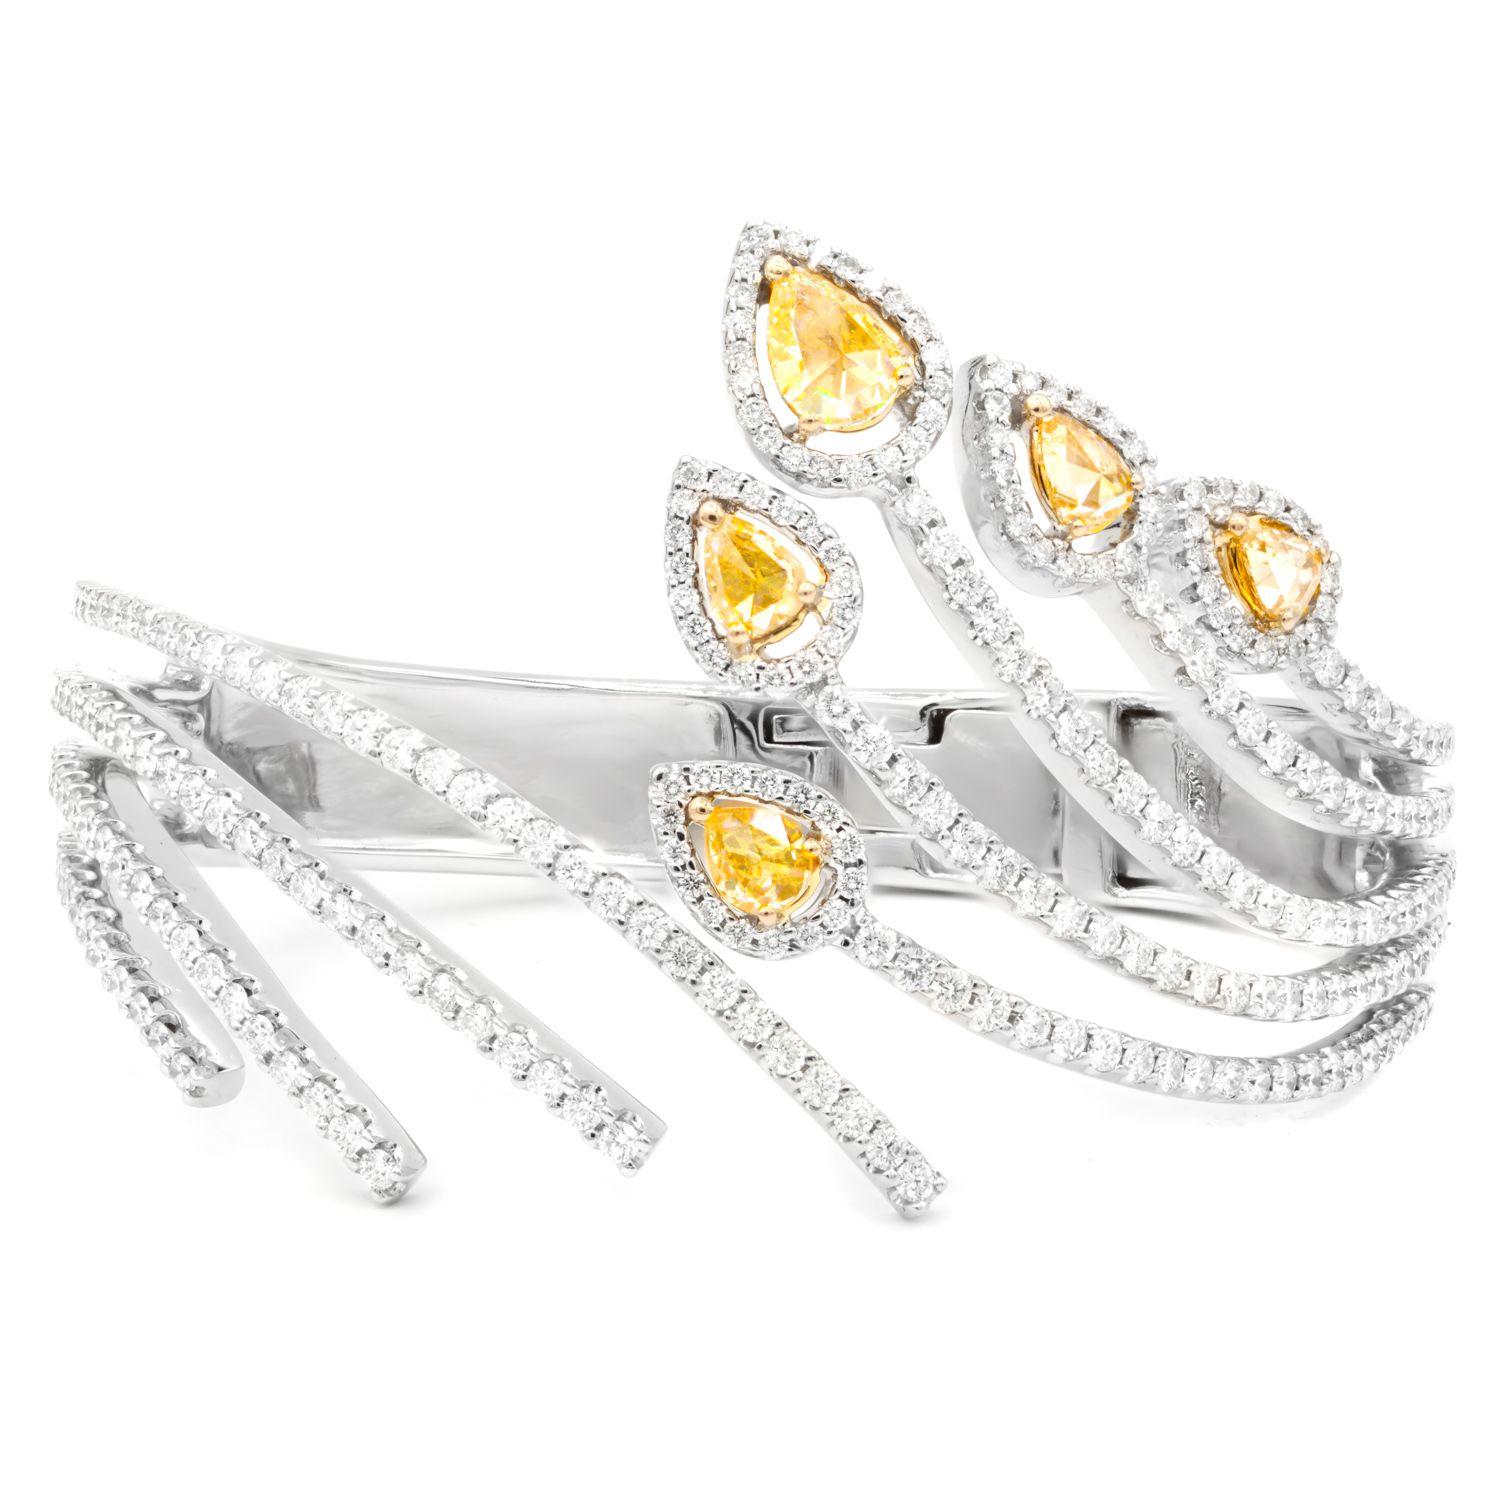 Bracelet spirale en or blanc 18 carats serti de diamants blancs et de diamants jaunes en forme de feuilles totalisant 8,00 cts tw de diamants.